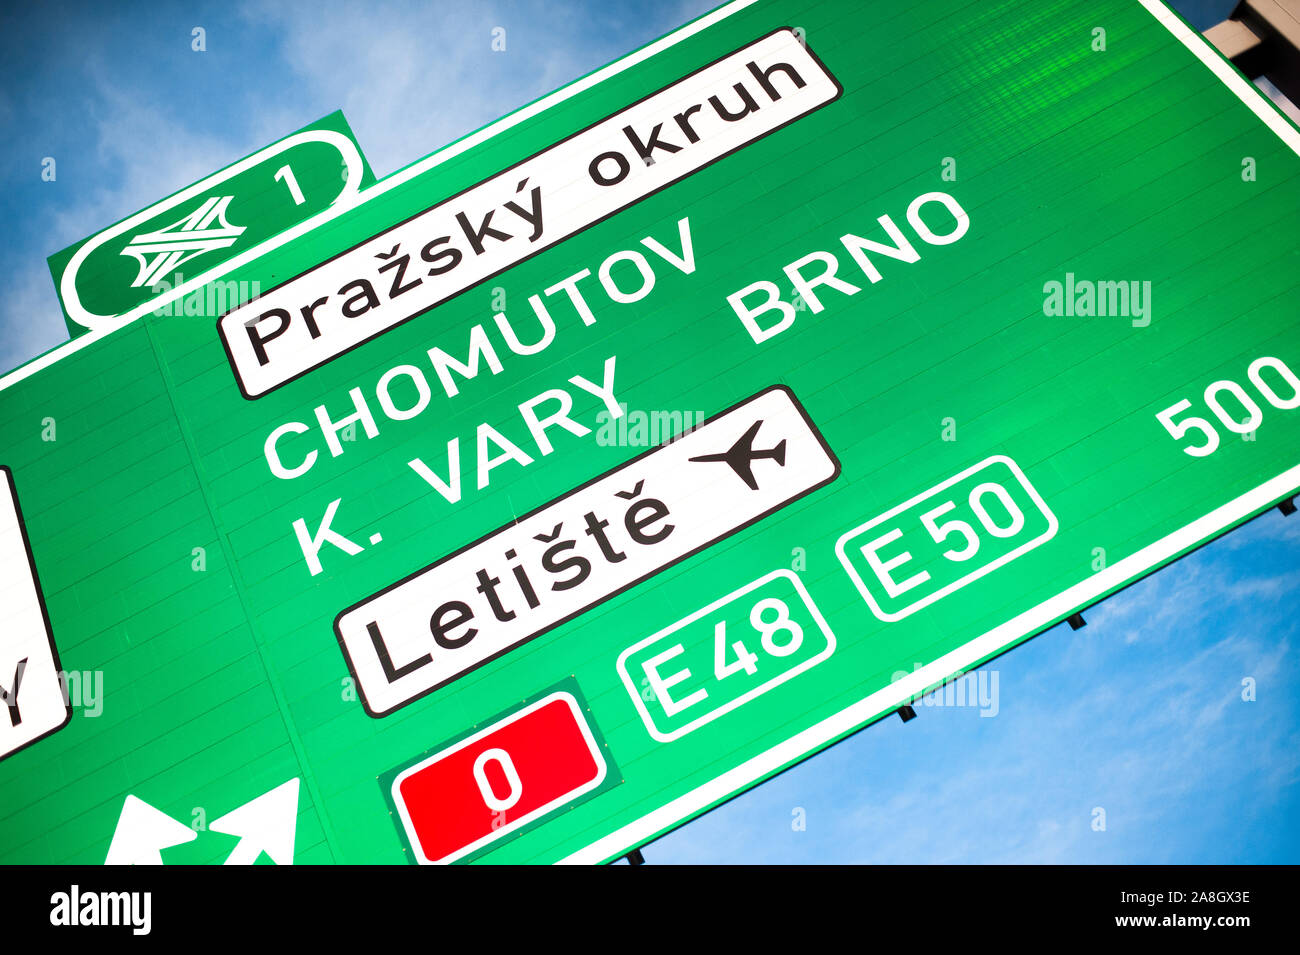 République tchèque, Prague, 2019. Green Road traffic sign de D0 Bague de Prague. Autoroute sortie dans les villes de Brno, Chomutov, Karlovy Vary et Vaclav Havel airpor Banque D'Images